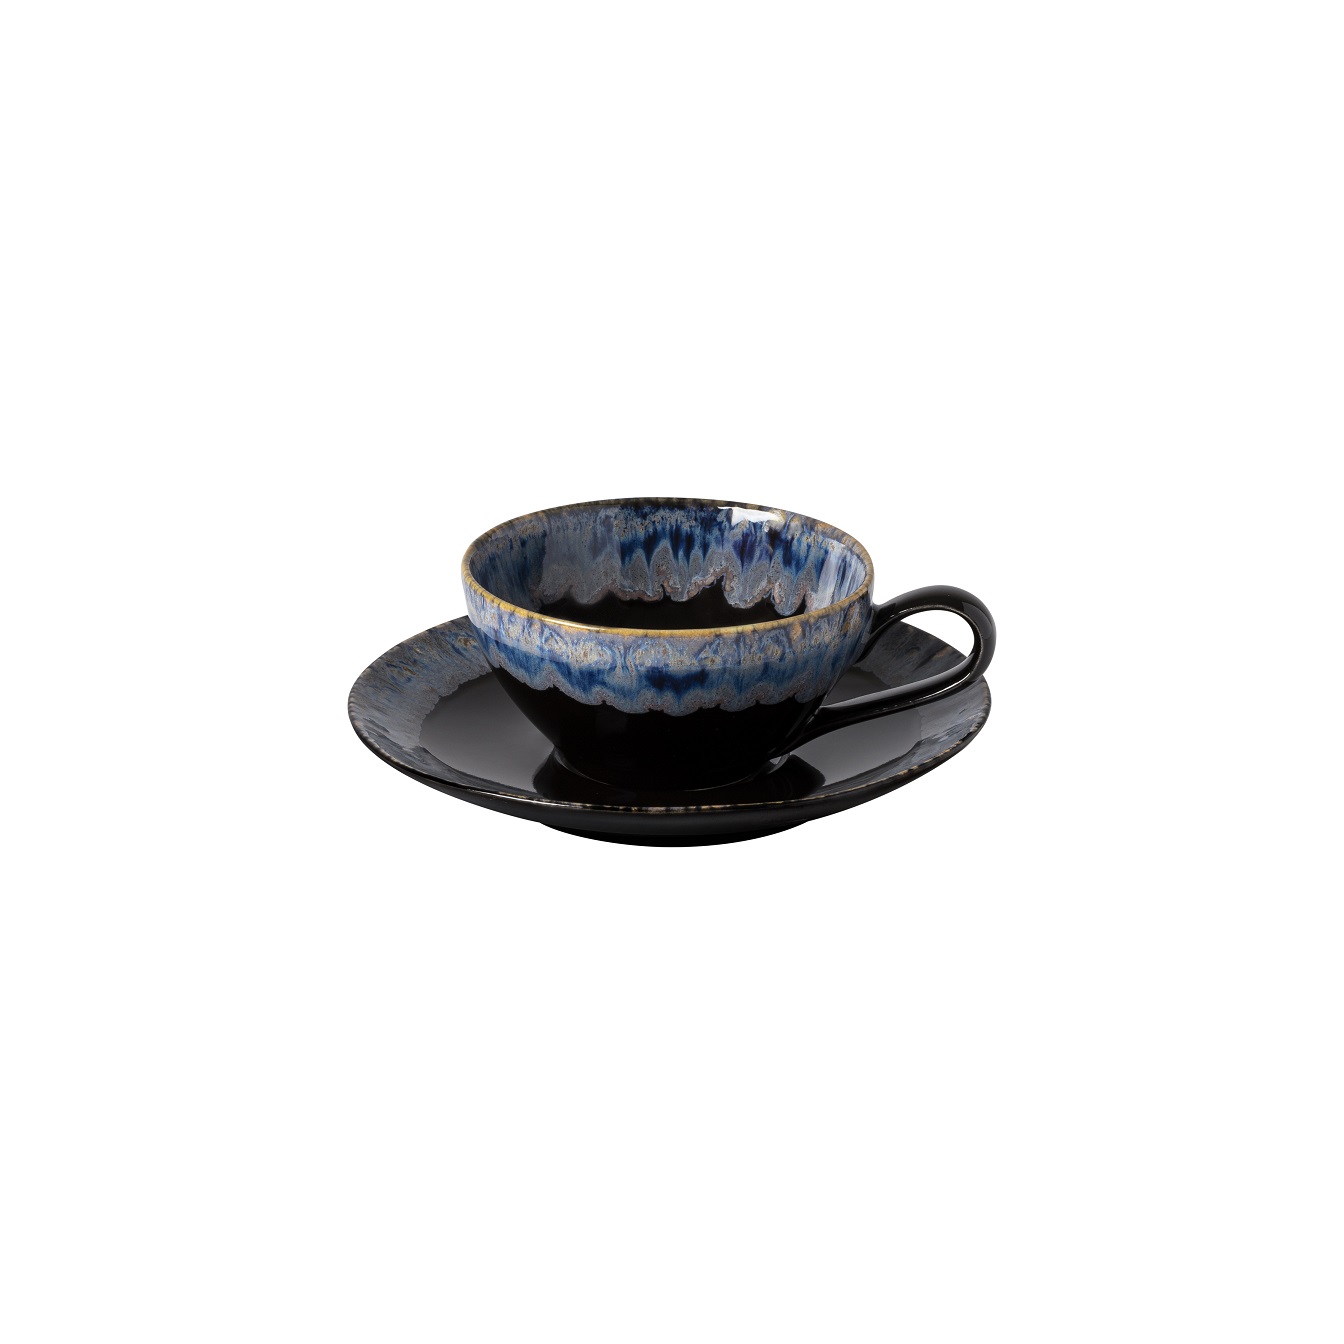 Taormina Black Tea Cup & Saucer 0.2l Gift